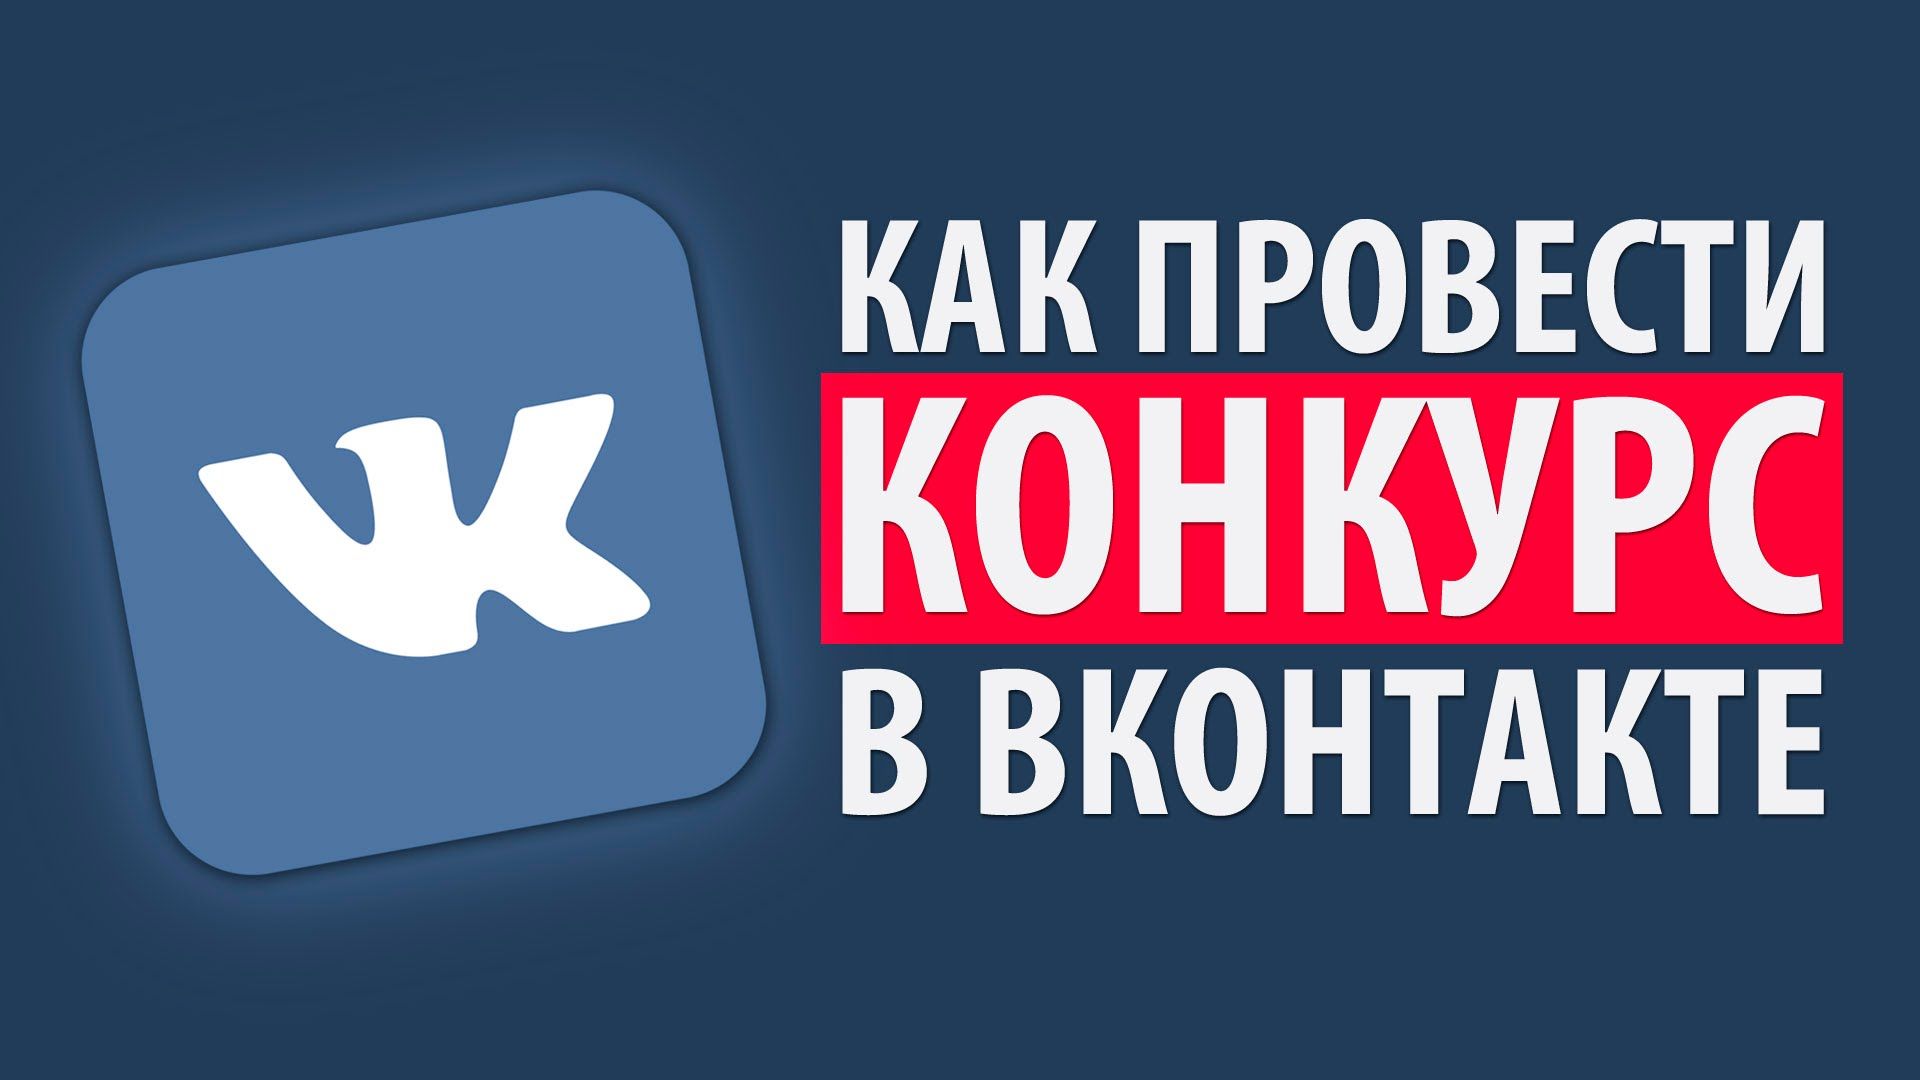 konkursy-vkontakte-smm-blog-502.png